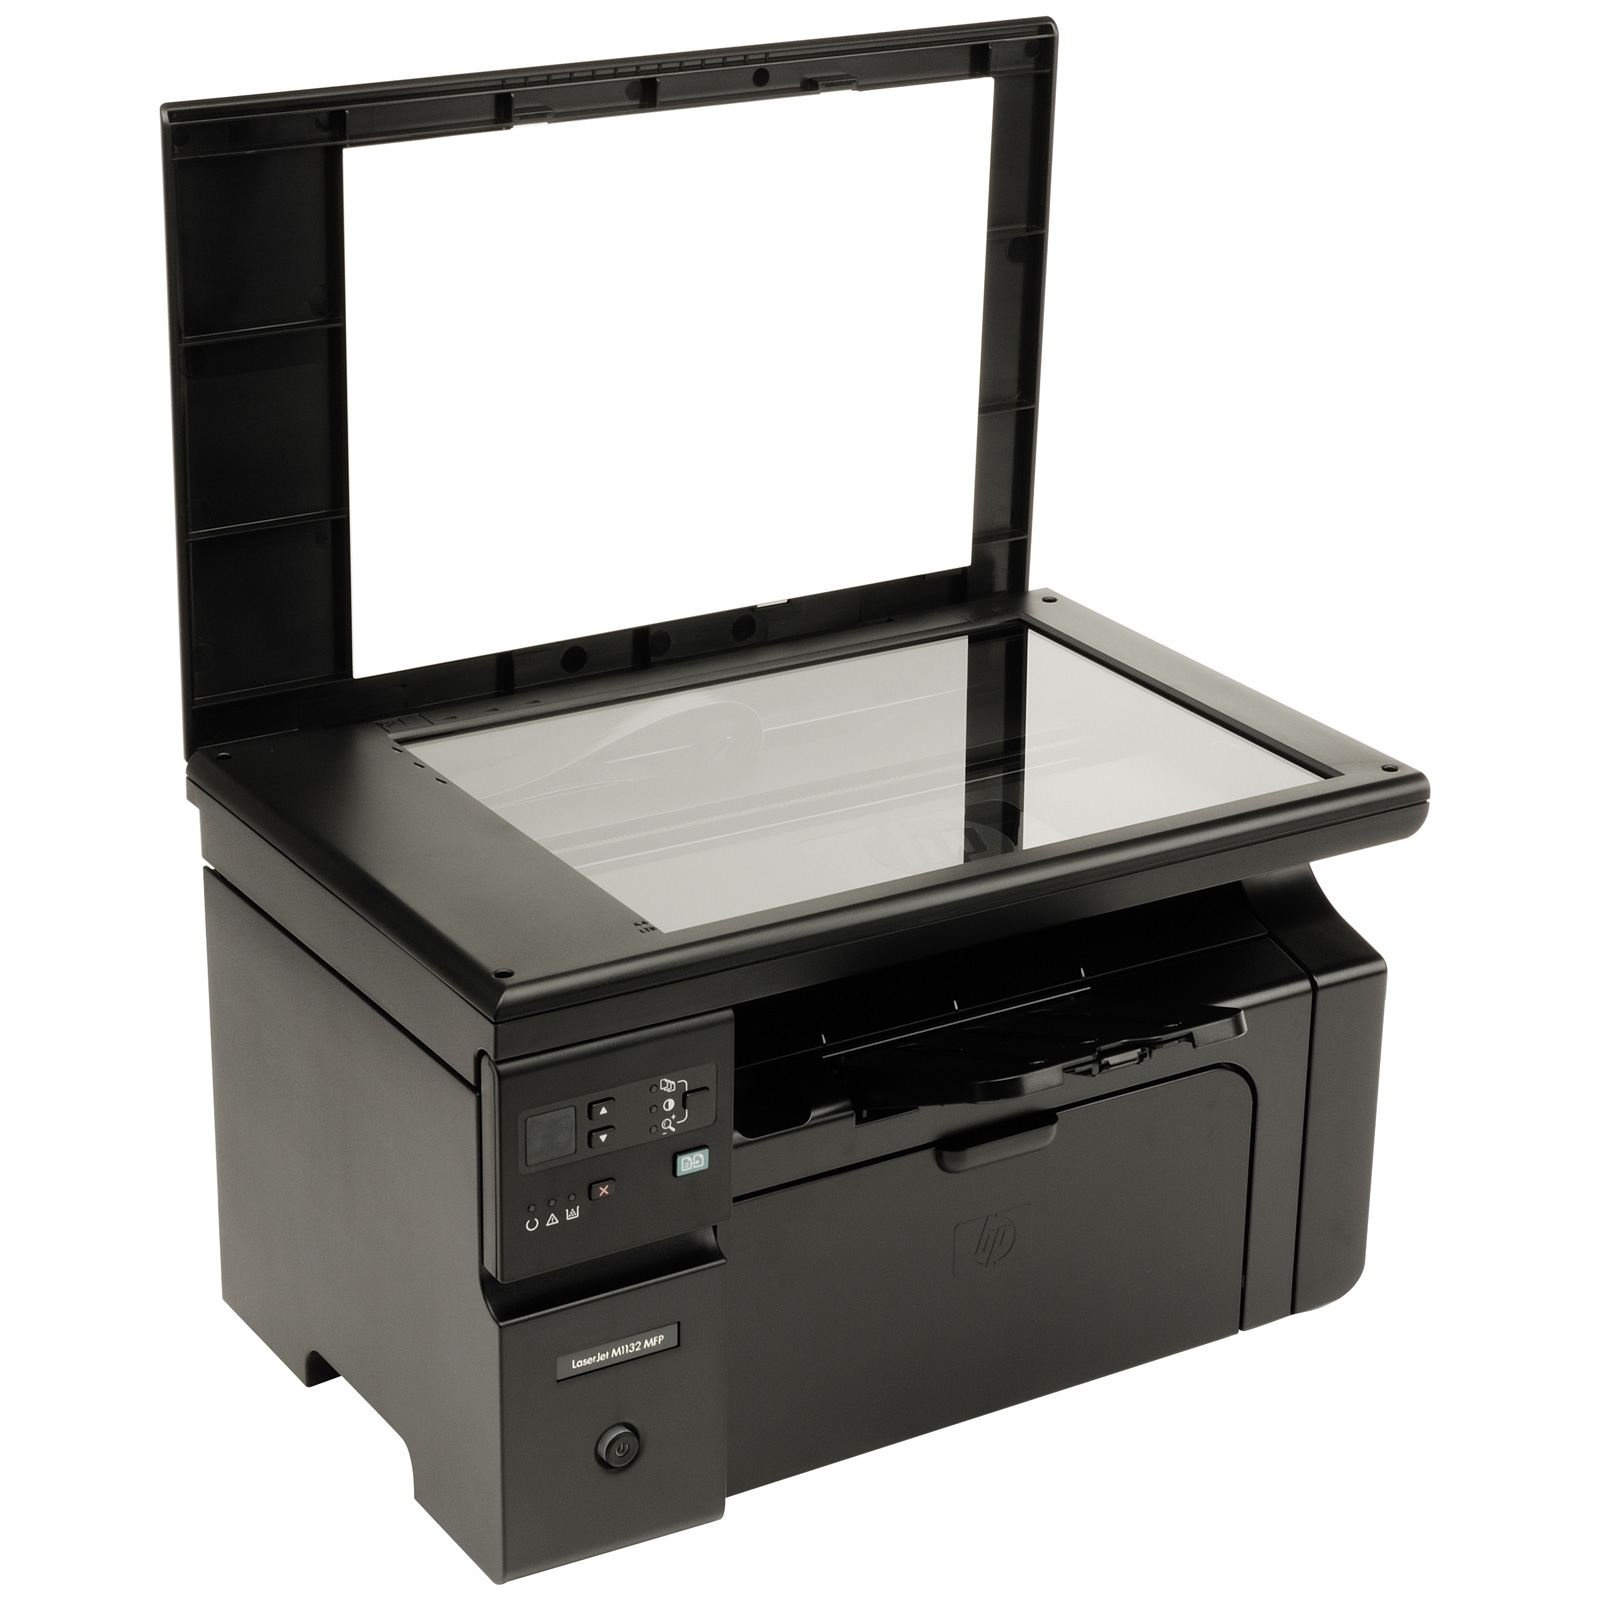 Принтер laserjet m1132 купить. LASERJET Pro m1132 MFP. МФУ LASERJET Pro m1132.